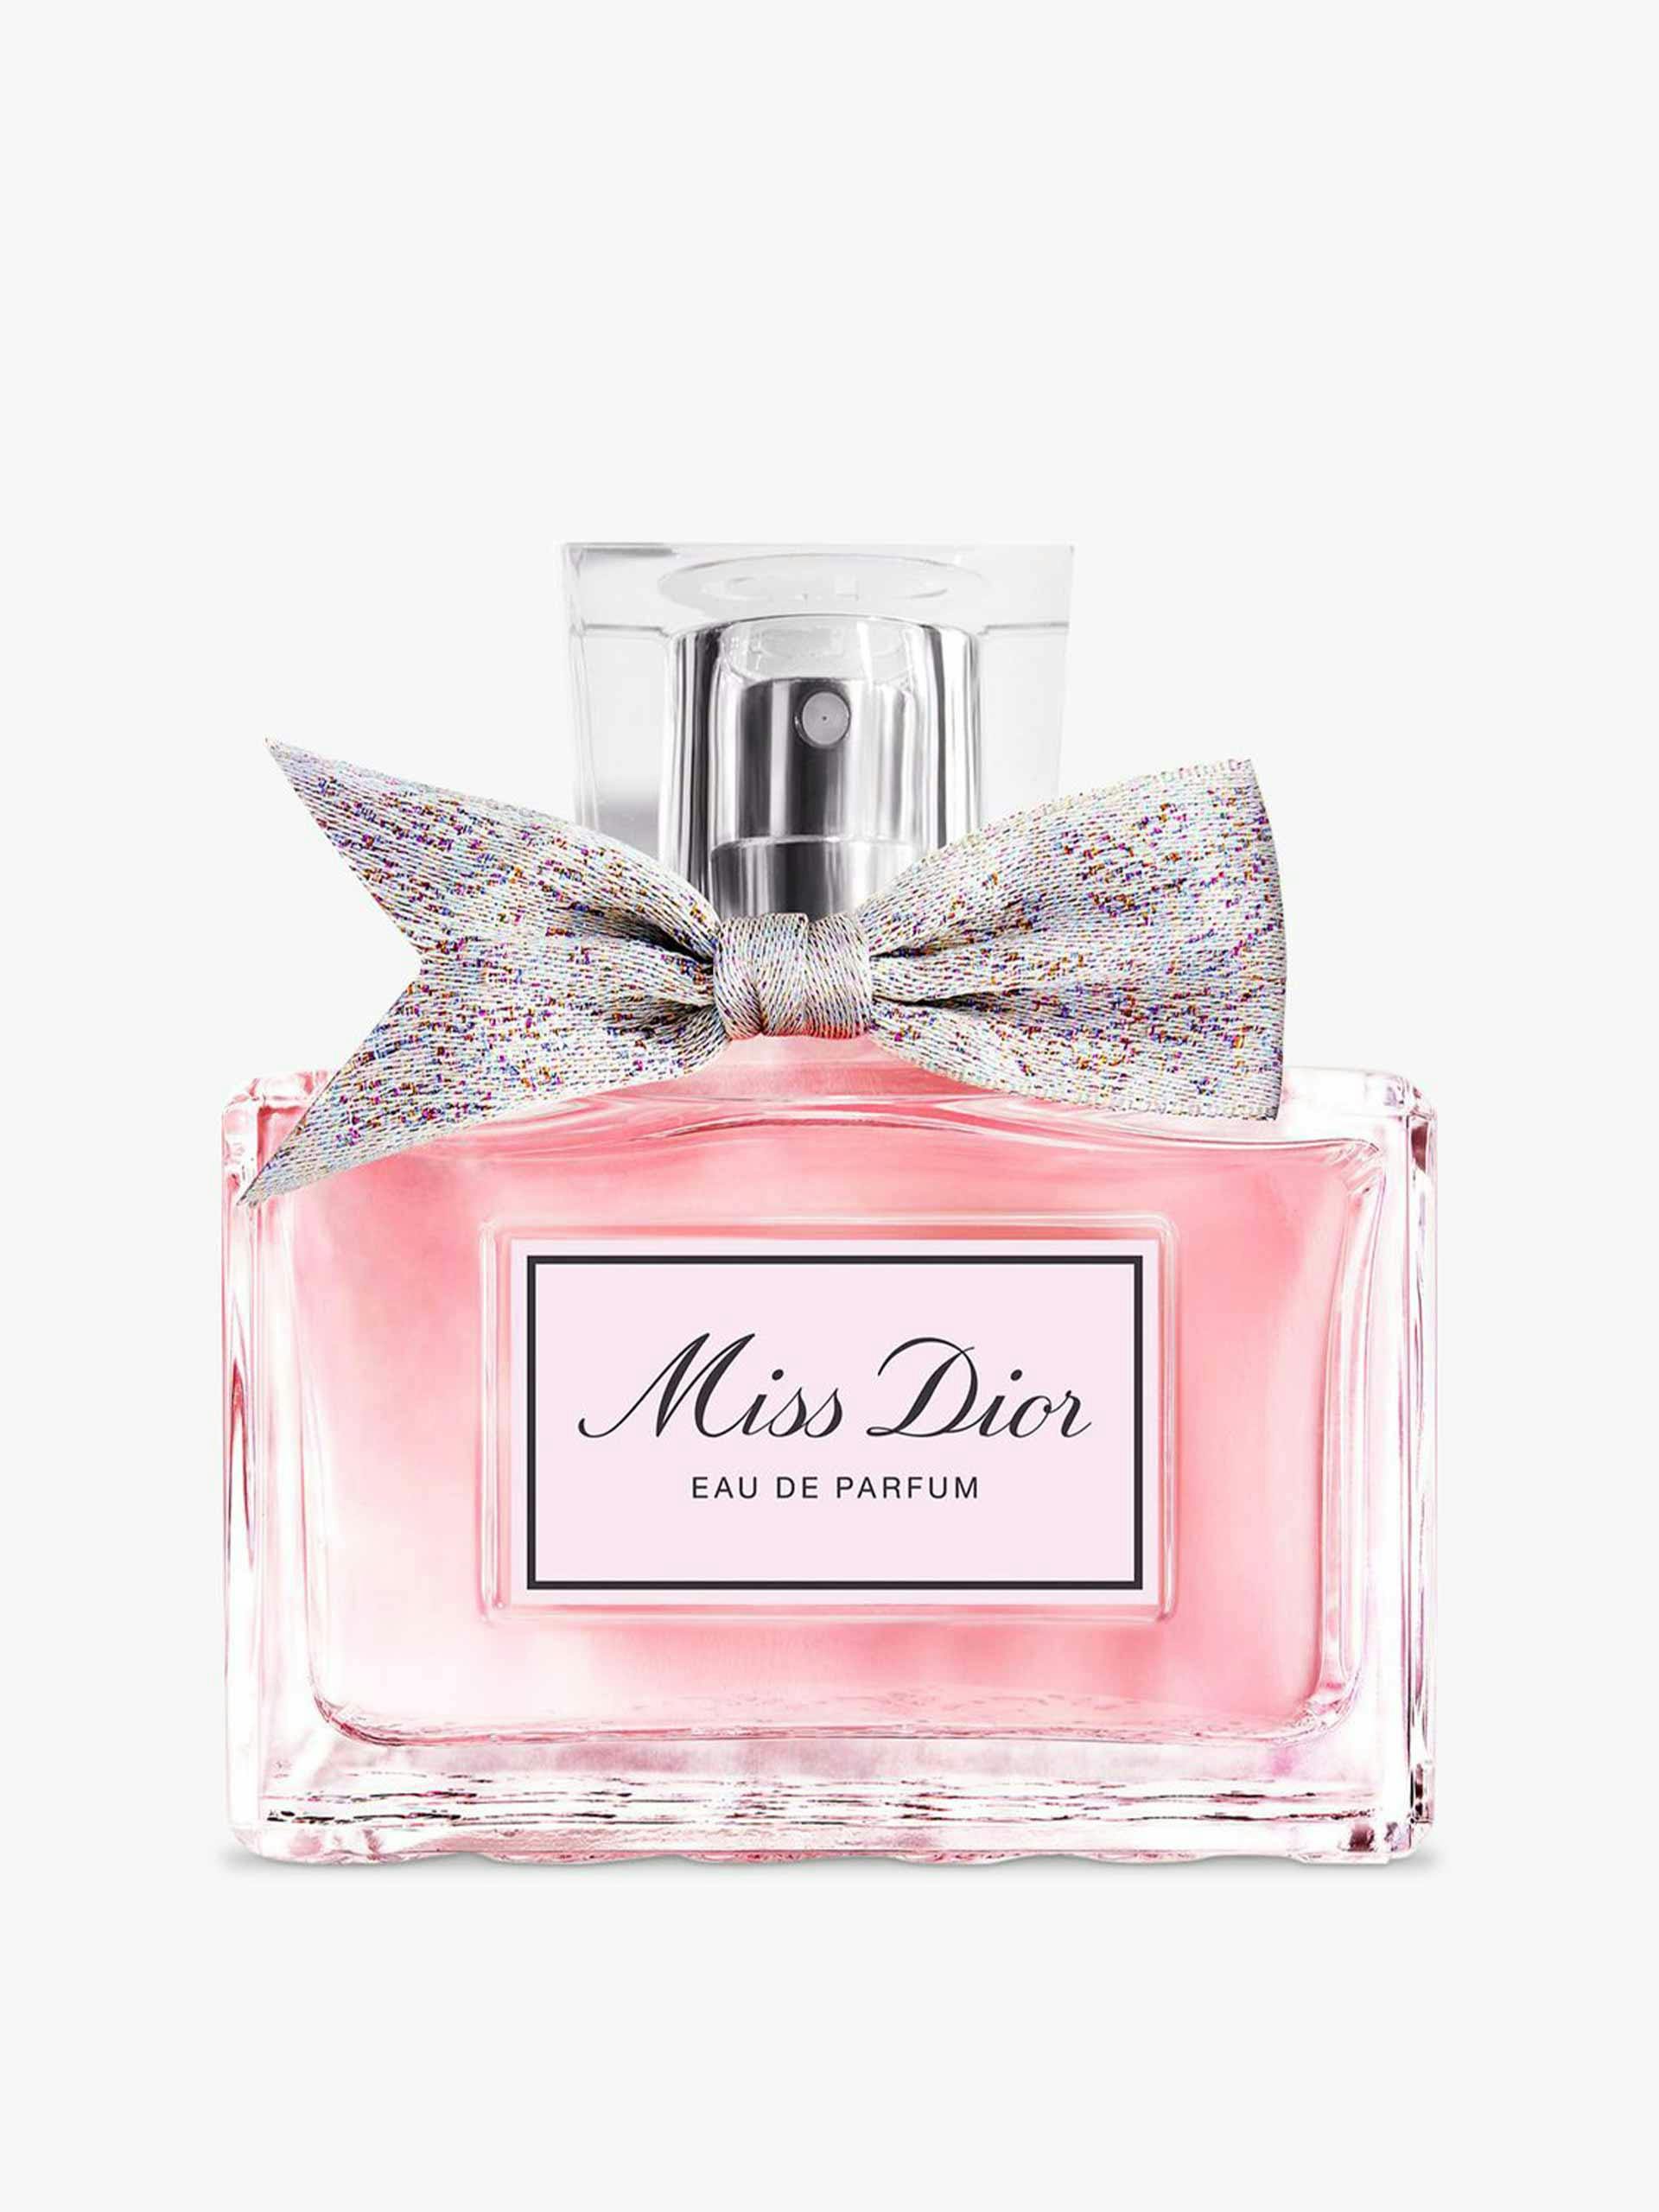 Miss Dior Eau de Parfum, 30ml